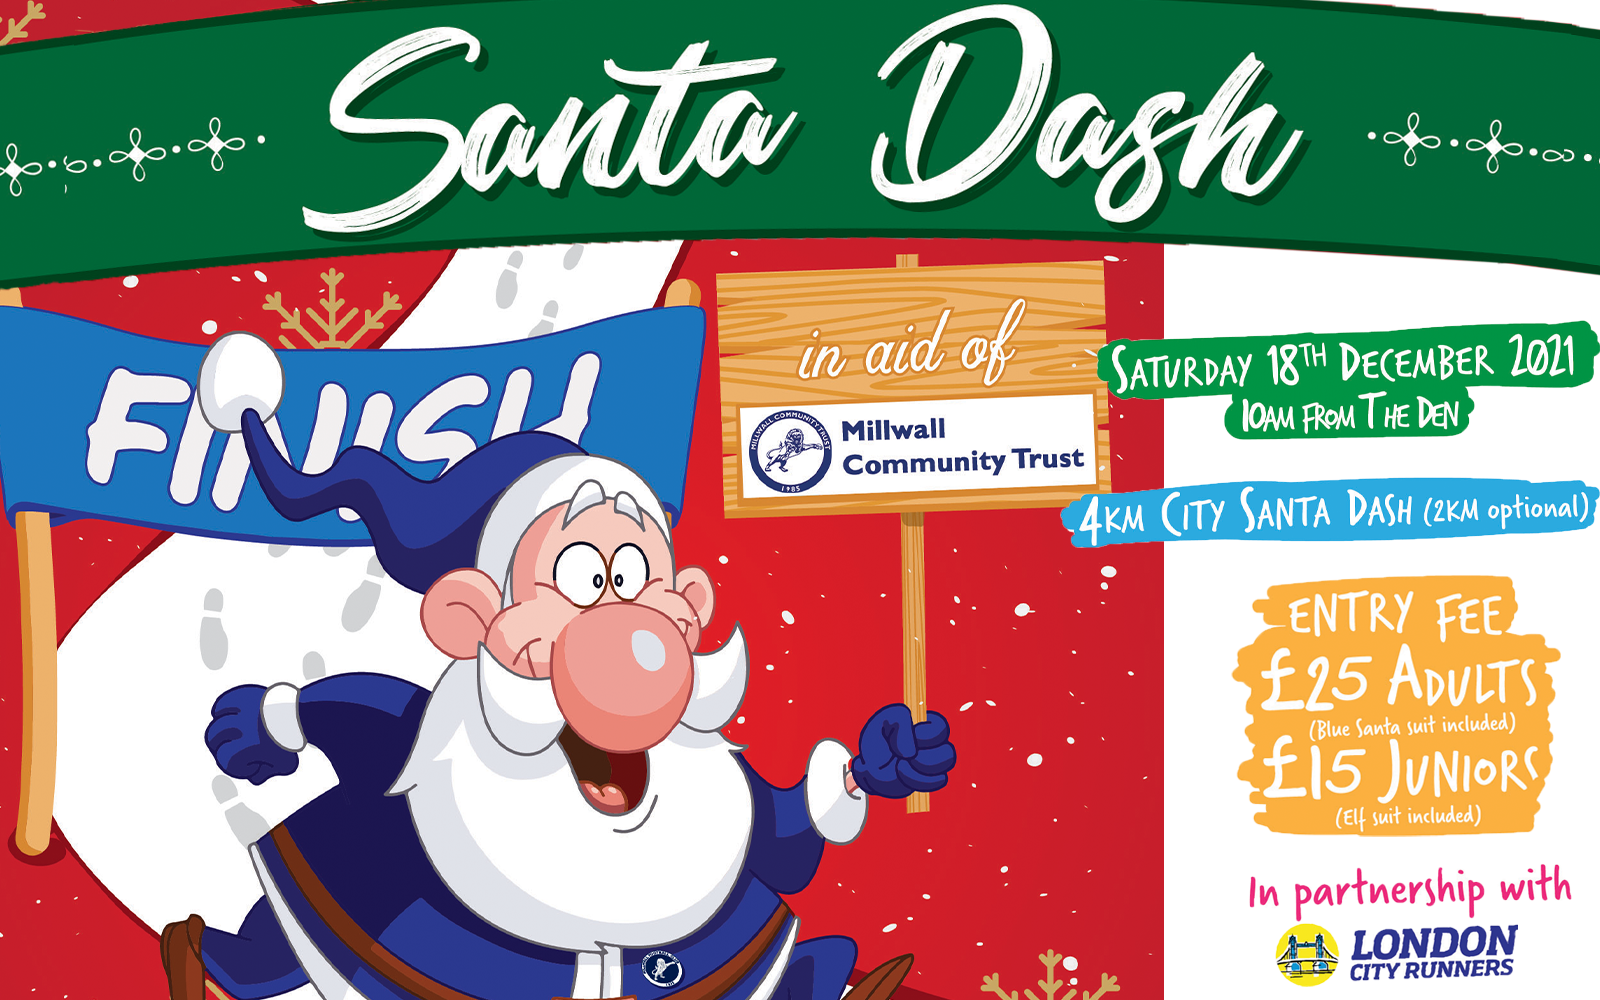 Millwall Community Trust - Take part in Millwall's Santa Dash!